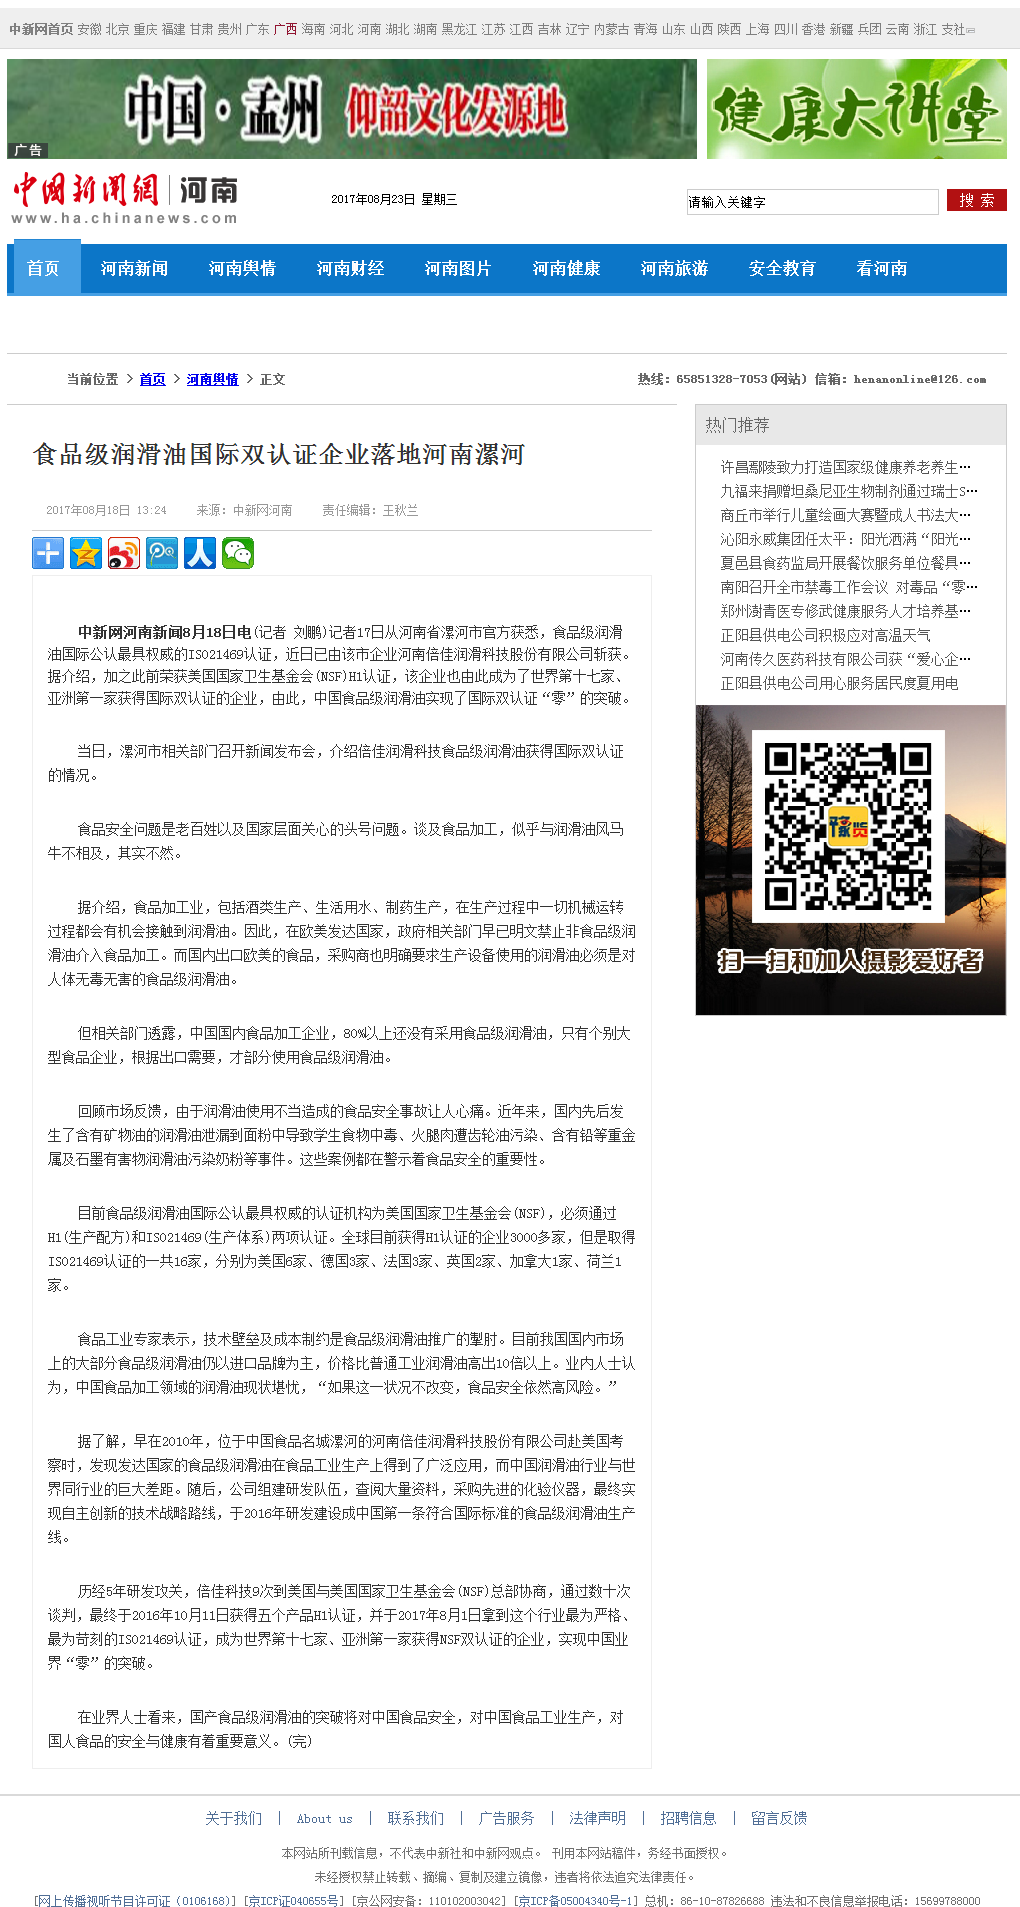 中新网:食品级润滑油国际双认证企业落地河南漯河